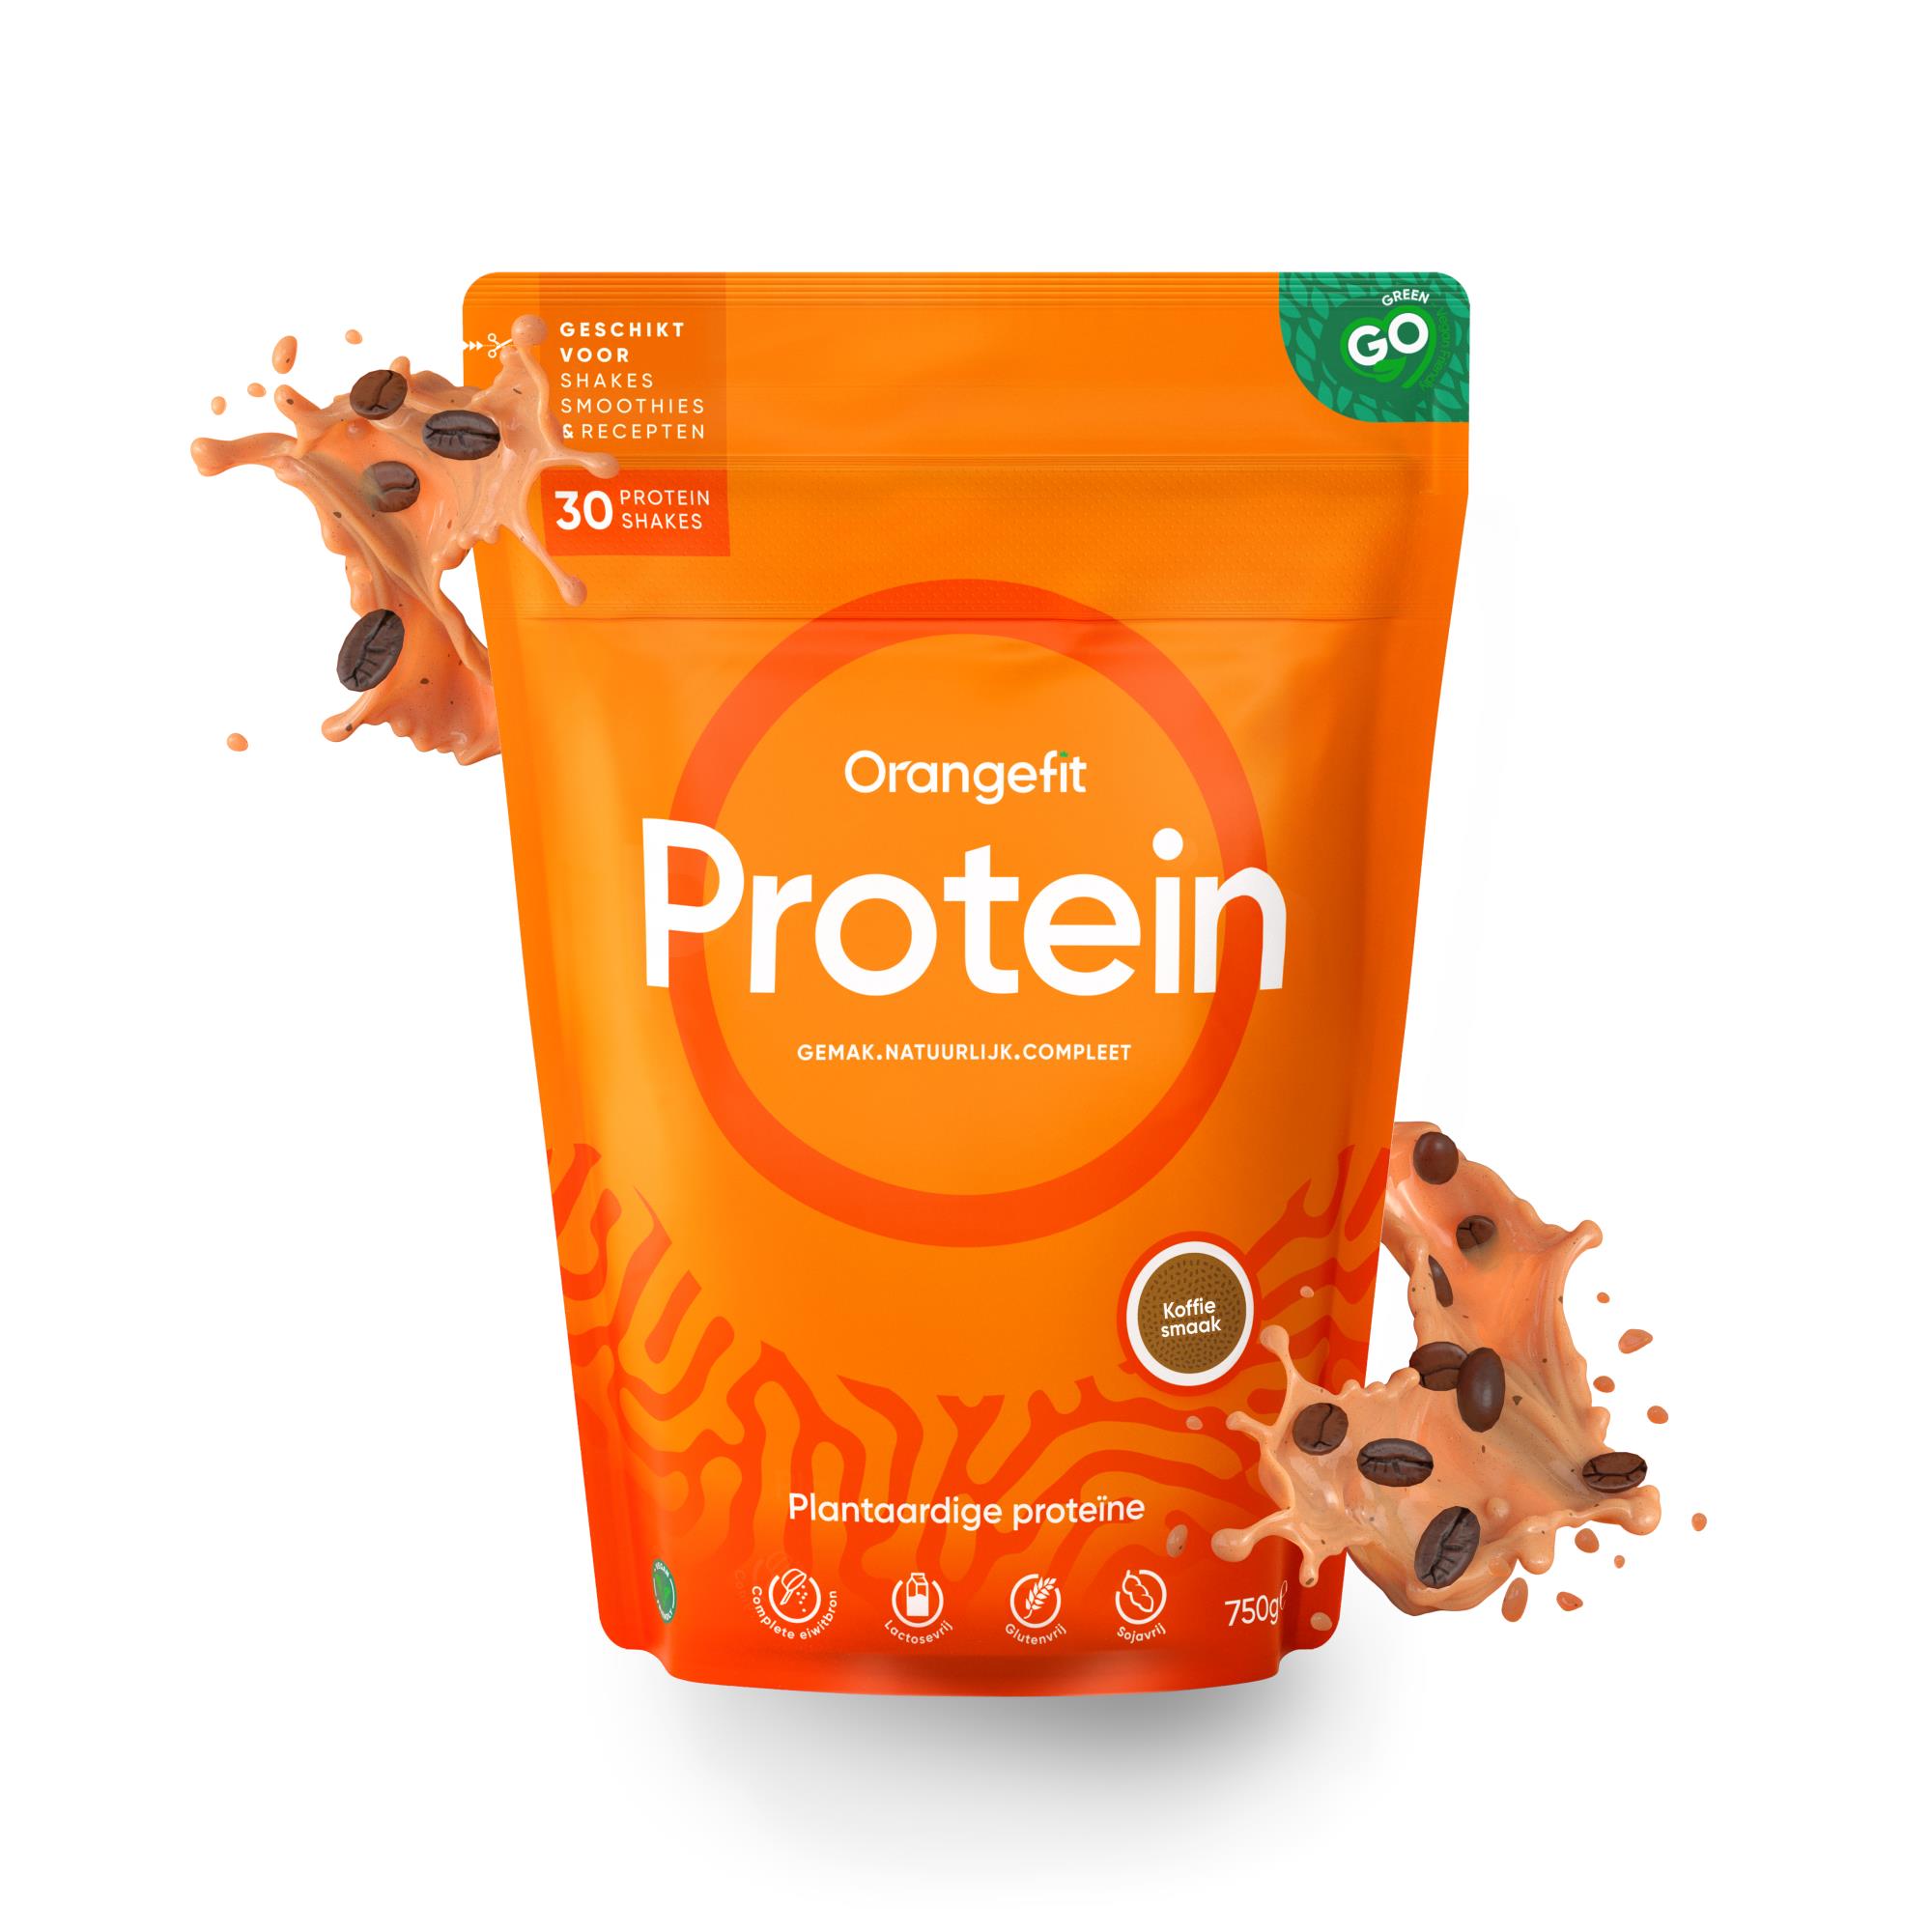 Orangefit Protein-Shake Kaffee, 750g